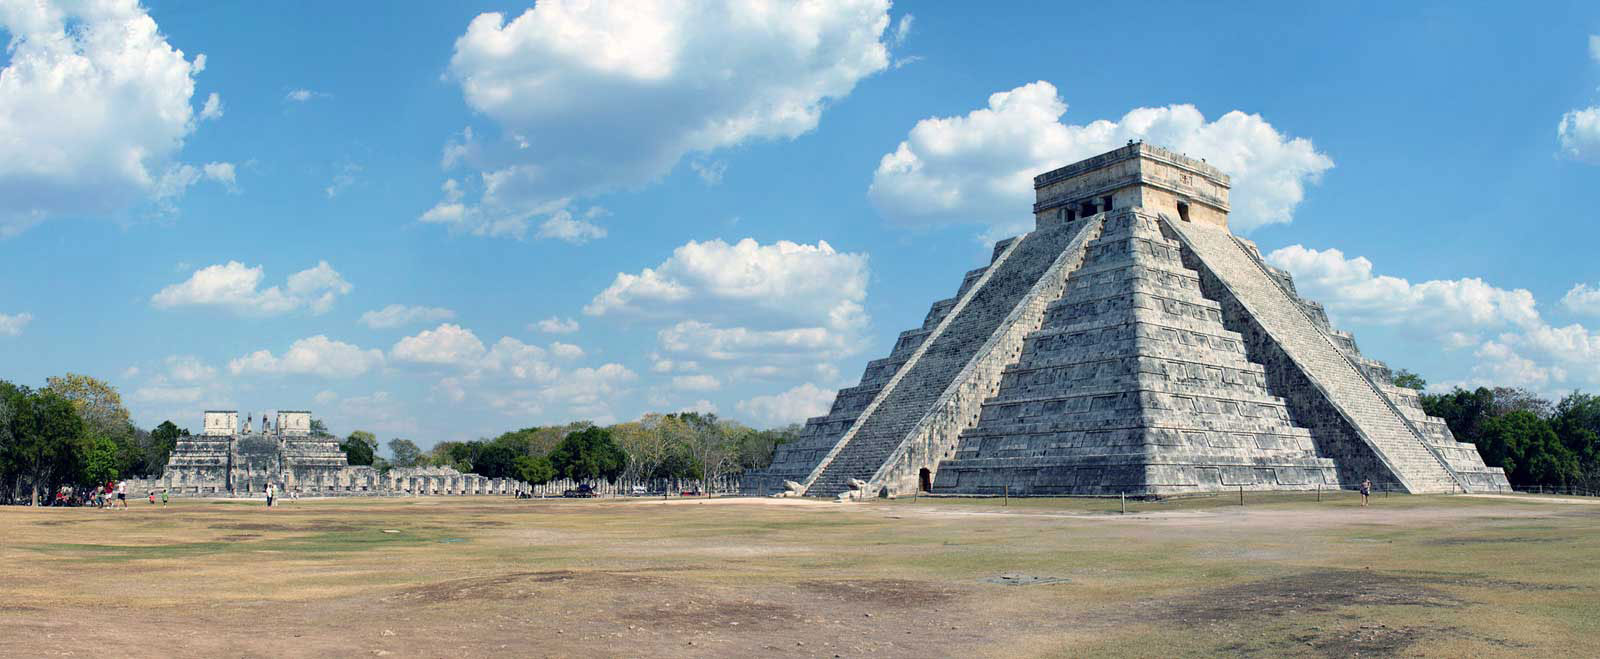 Mayan Ruins at Chichen Itza Travel and Mythology